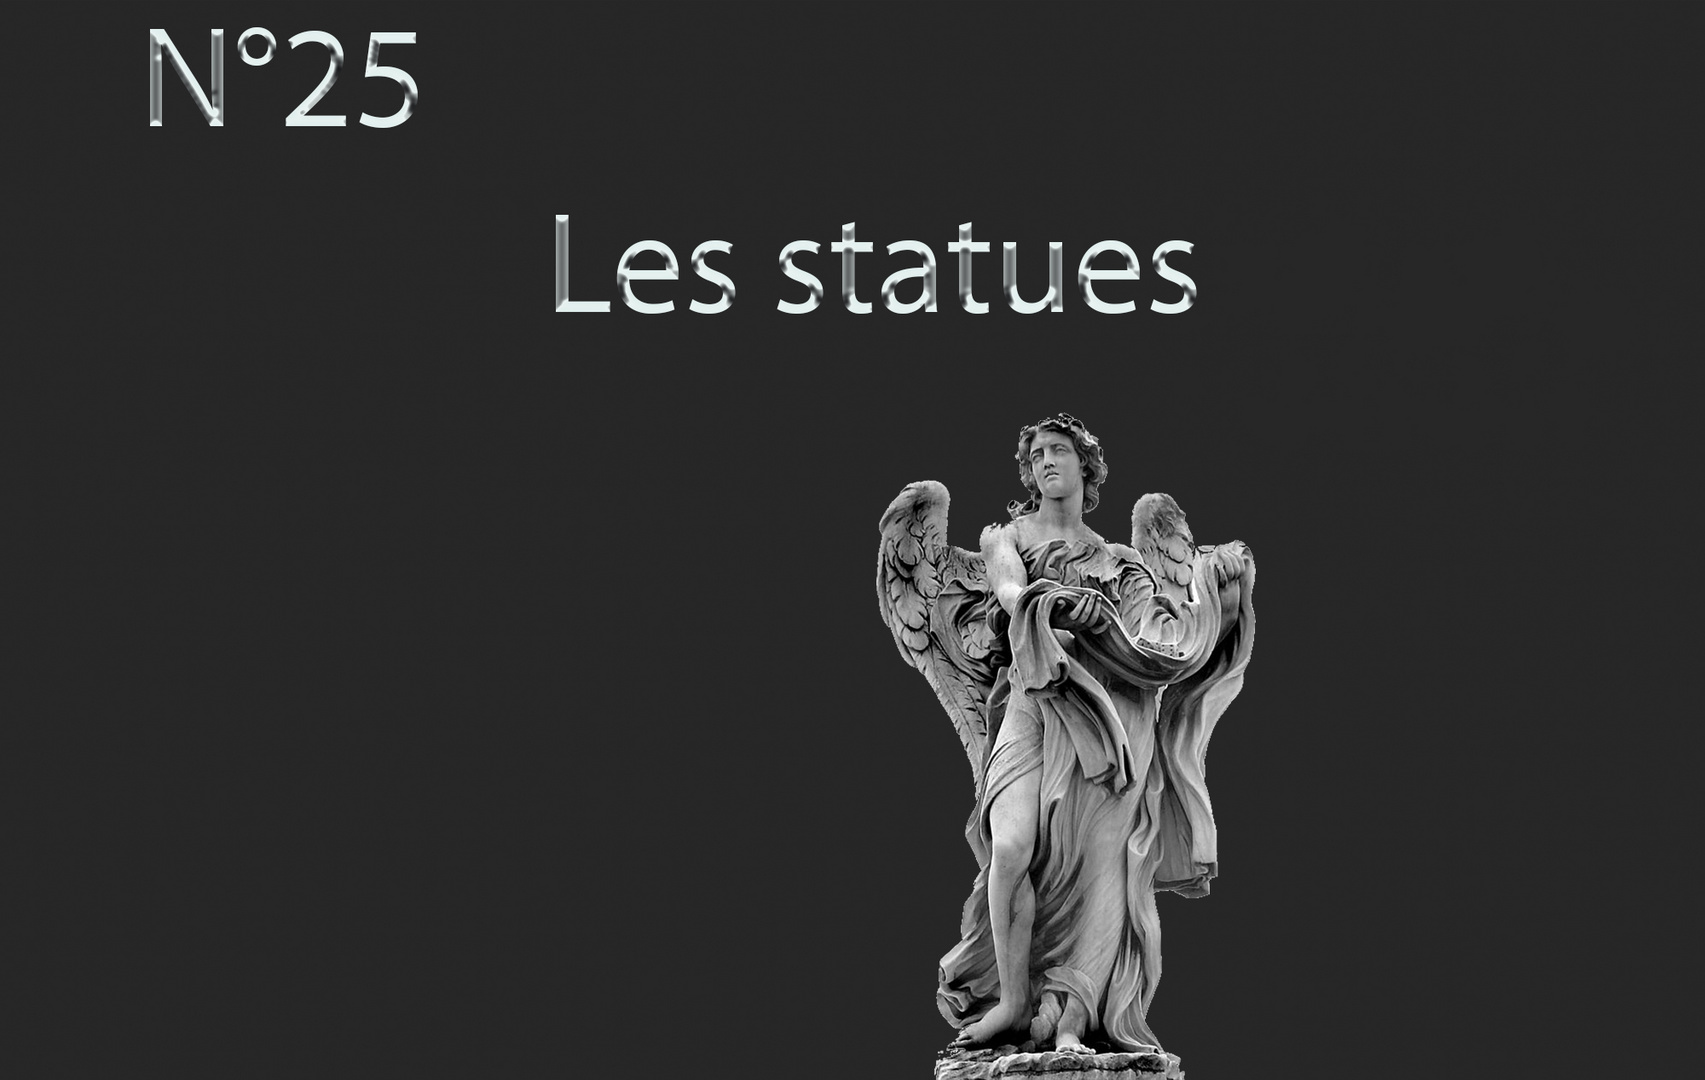 Les statues